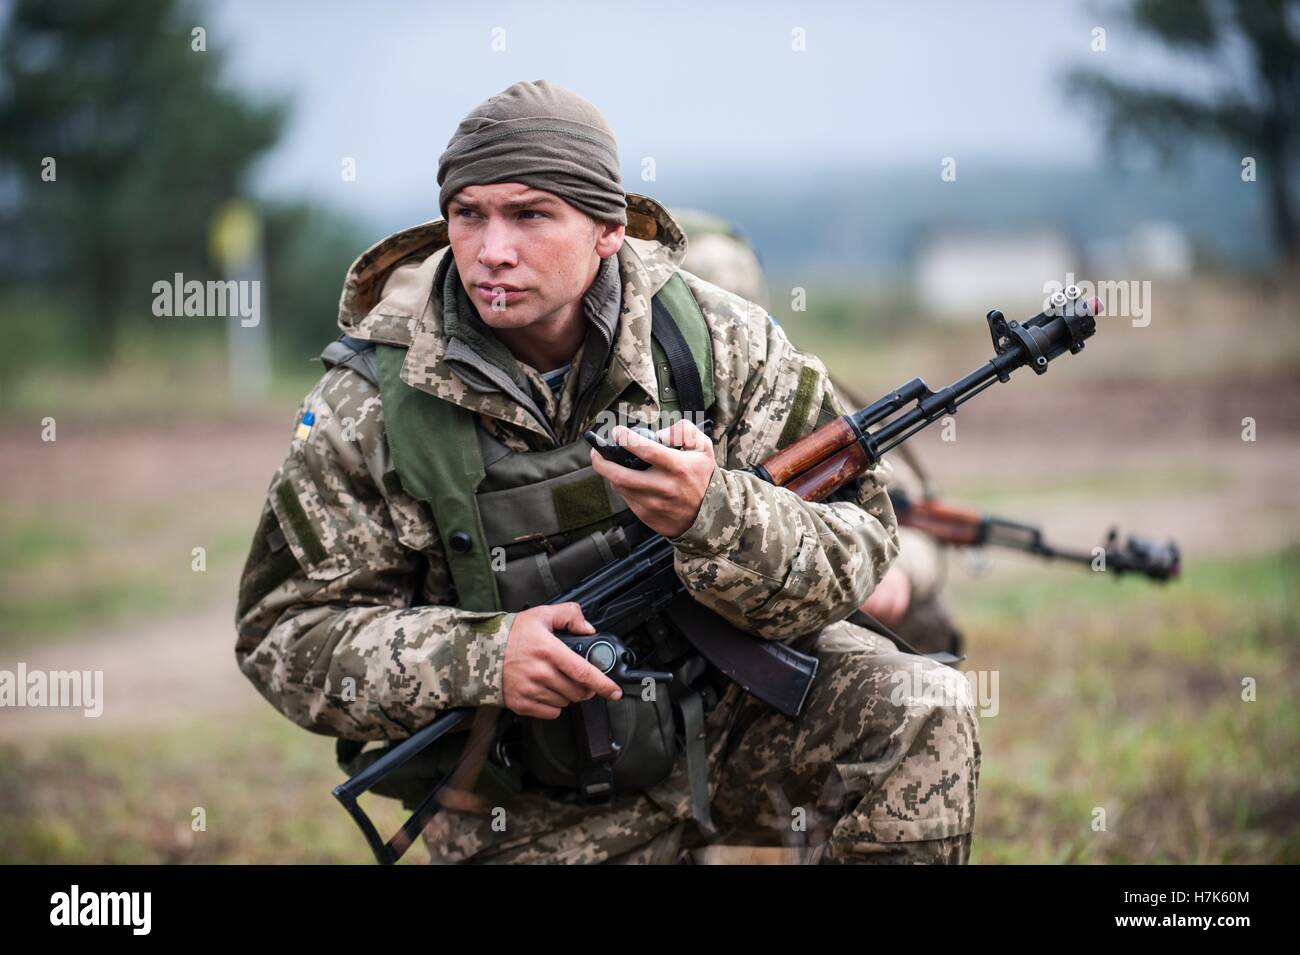 Un soldat de la Marine ukrainienne au cours de l'exercice Trident rapide cordon et recherchez une mission de formation au maintien de la paix internationale et la sécurité le 23 septembre 2014 dans l'viv, Ukraine. Banque D'Images